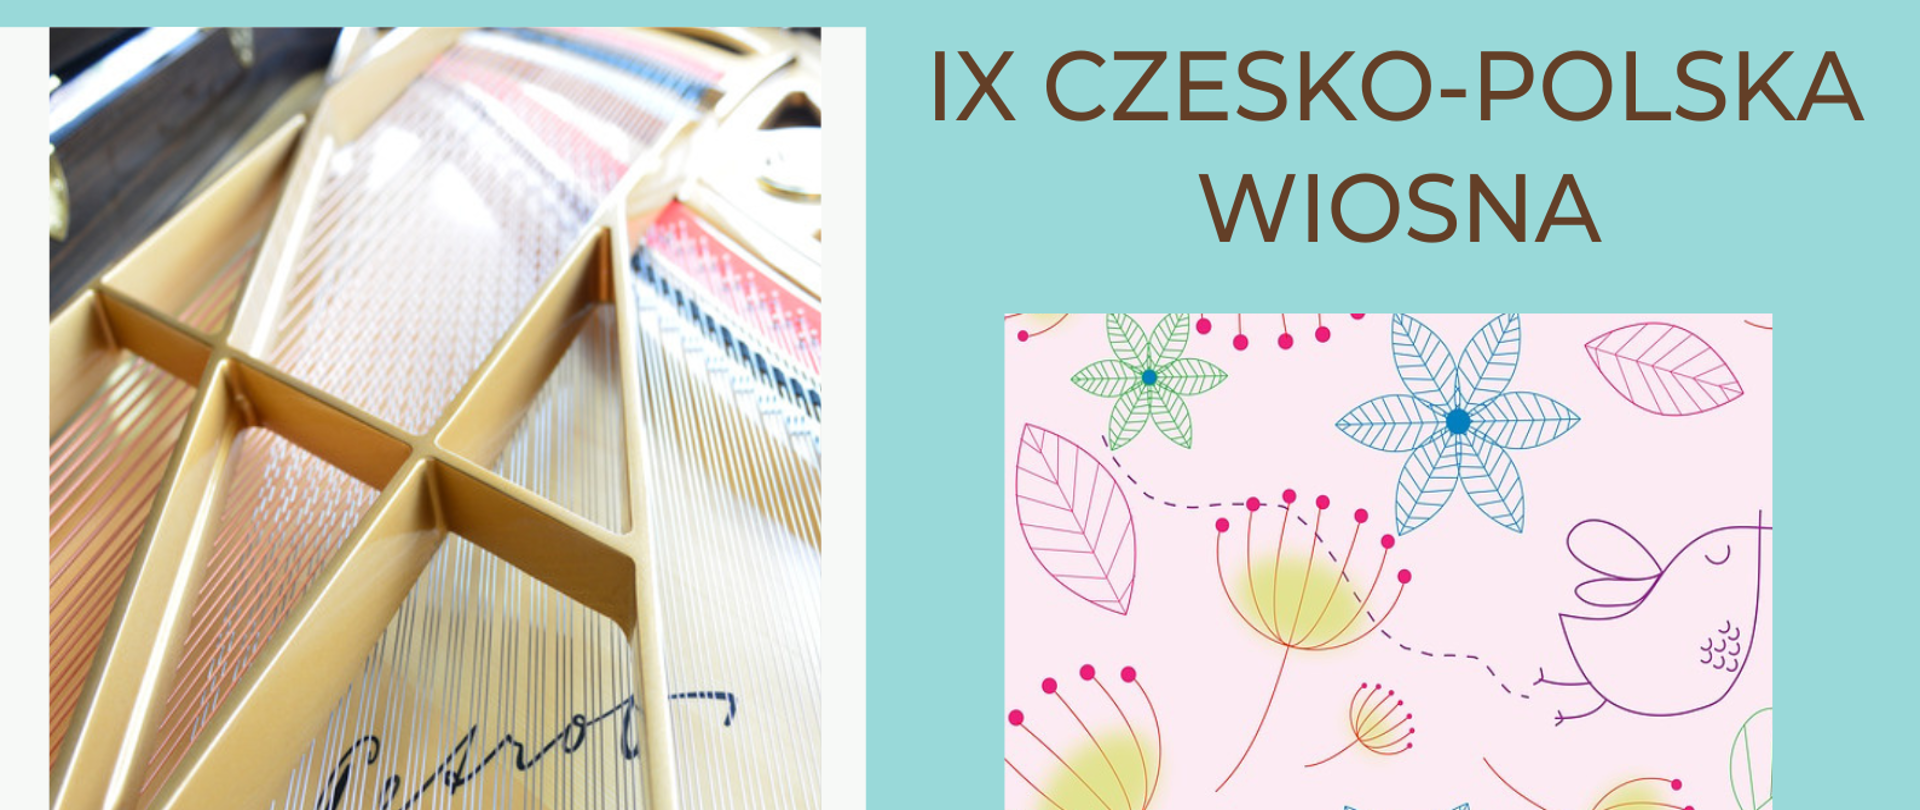 Plakat na niebieskim tle , z trzema zdjęciami fortepianu po prawej stronie, grafiką kwiatków po prawej stronie oraz szczegółową informacją tekstową dot. IX Czesko-Polskiej wiosny.